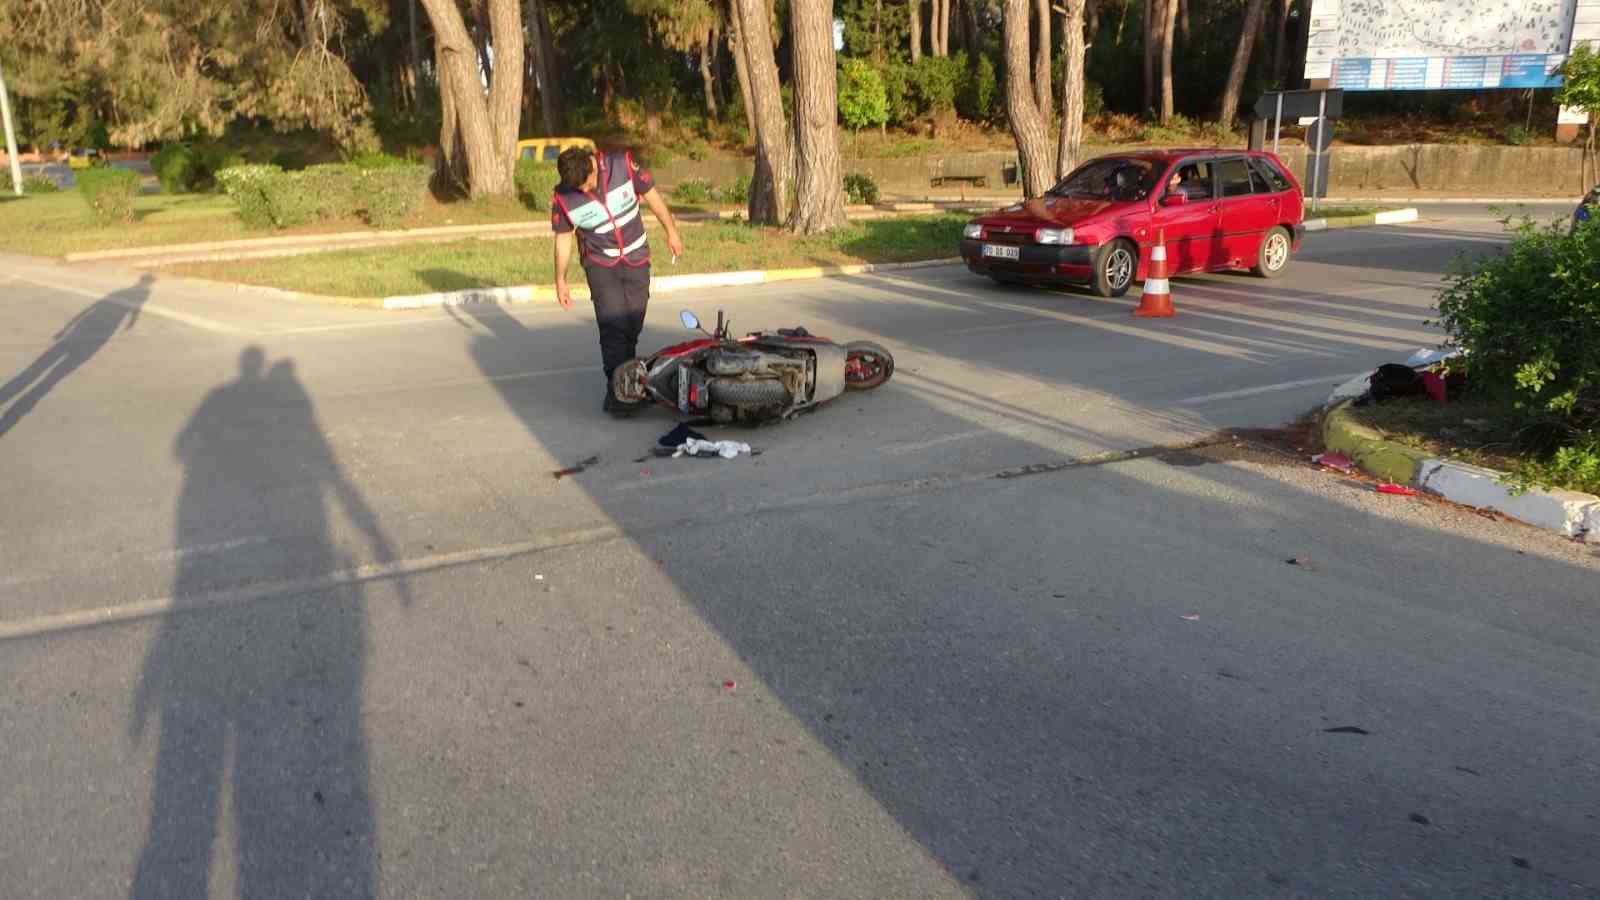 ticari taksi ile motosiklet çarpıştı: 1 yaralı